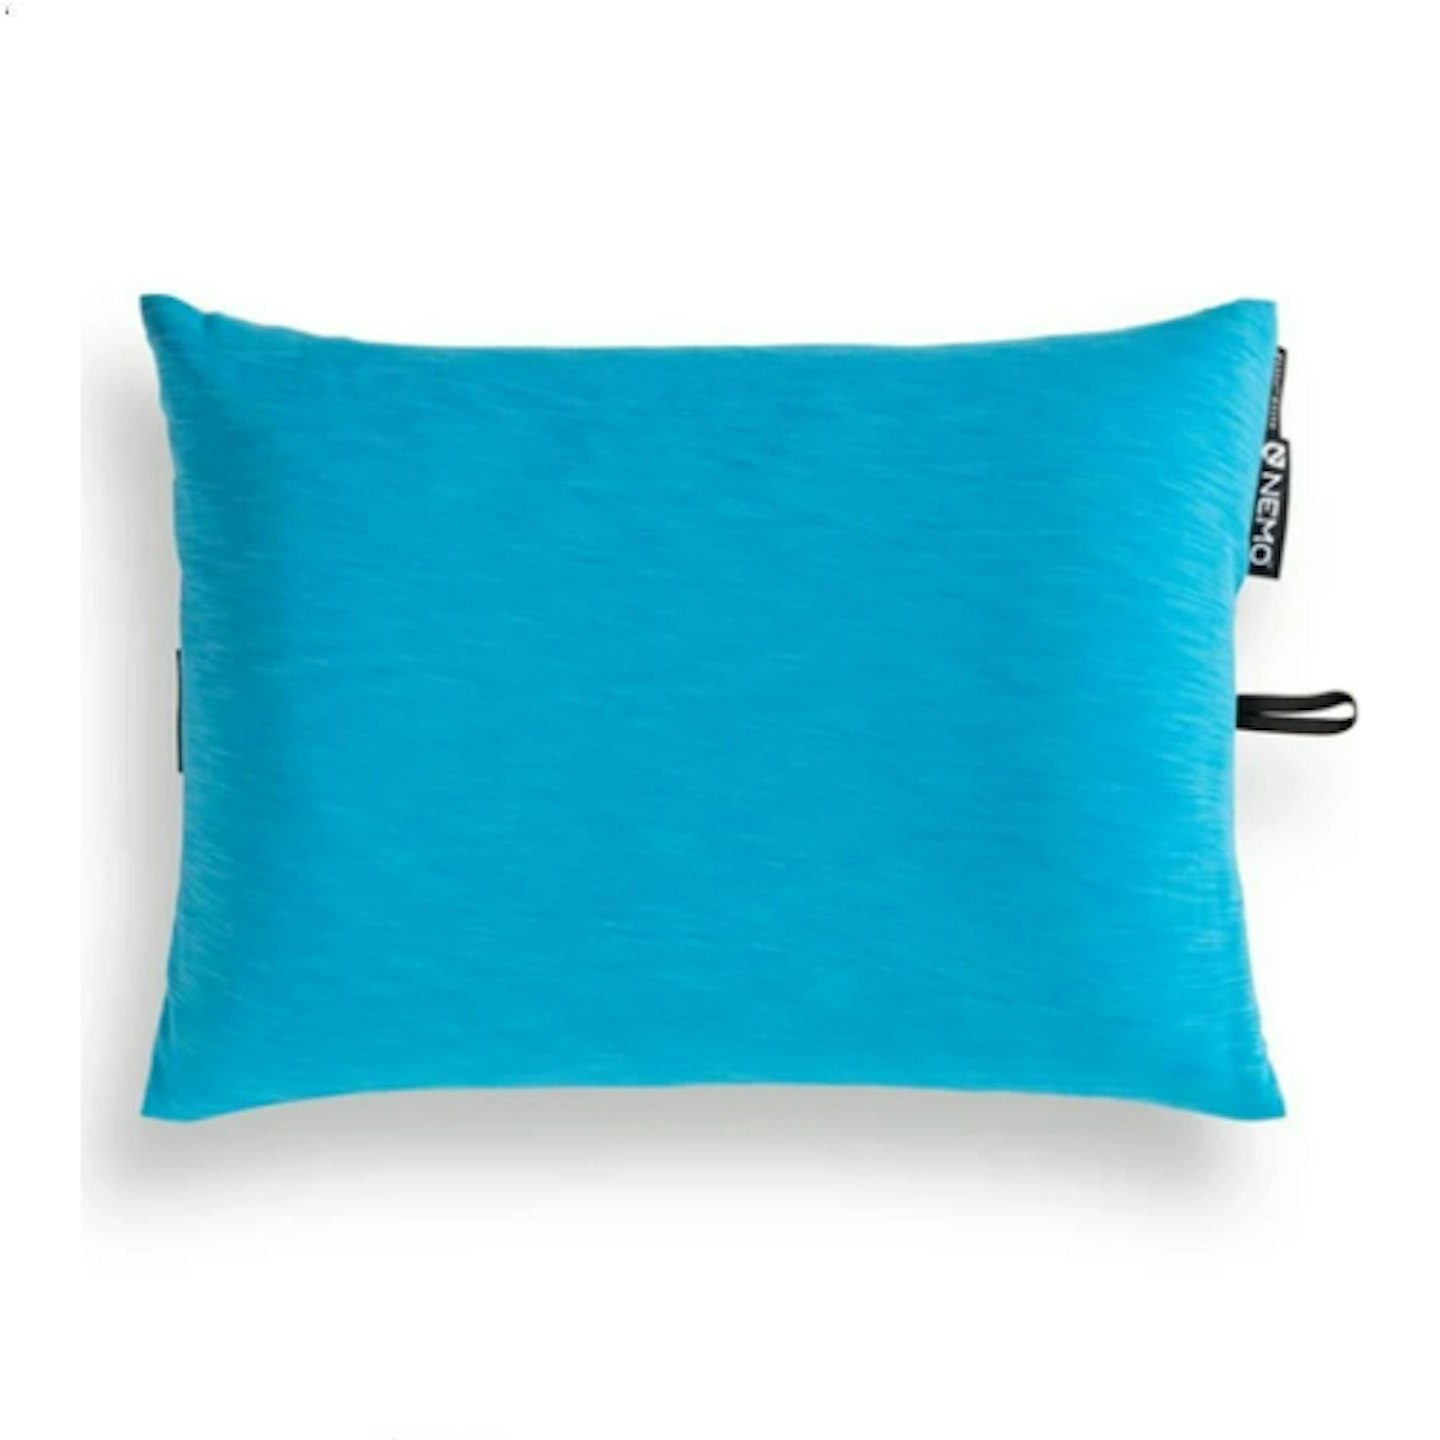 Fillo Elite Ultralight Backpacking Pillow